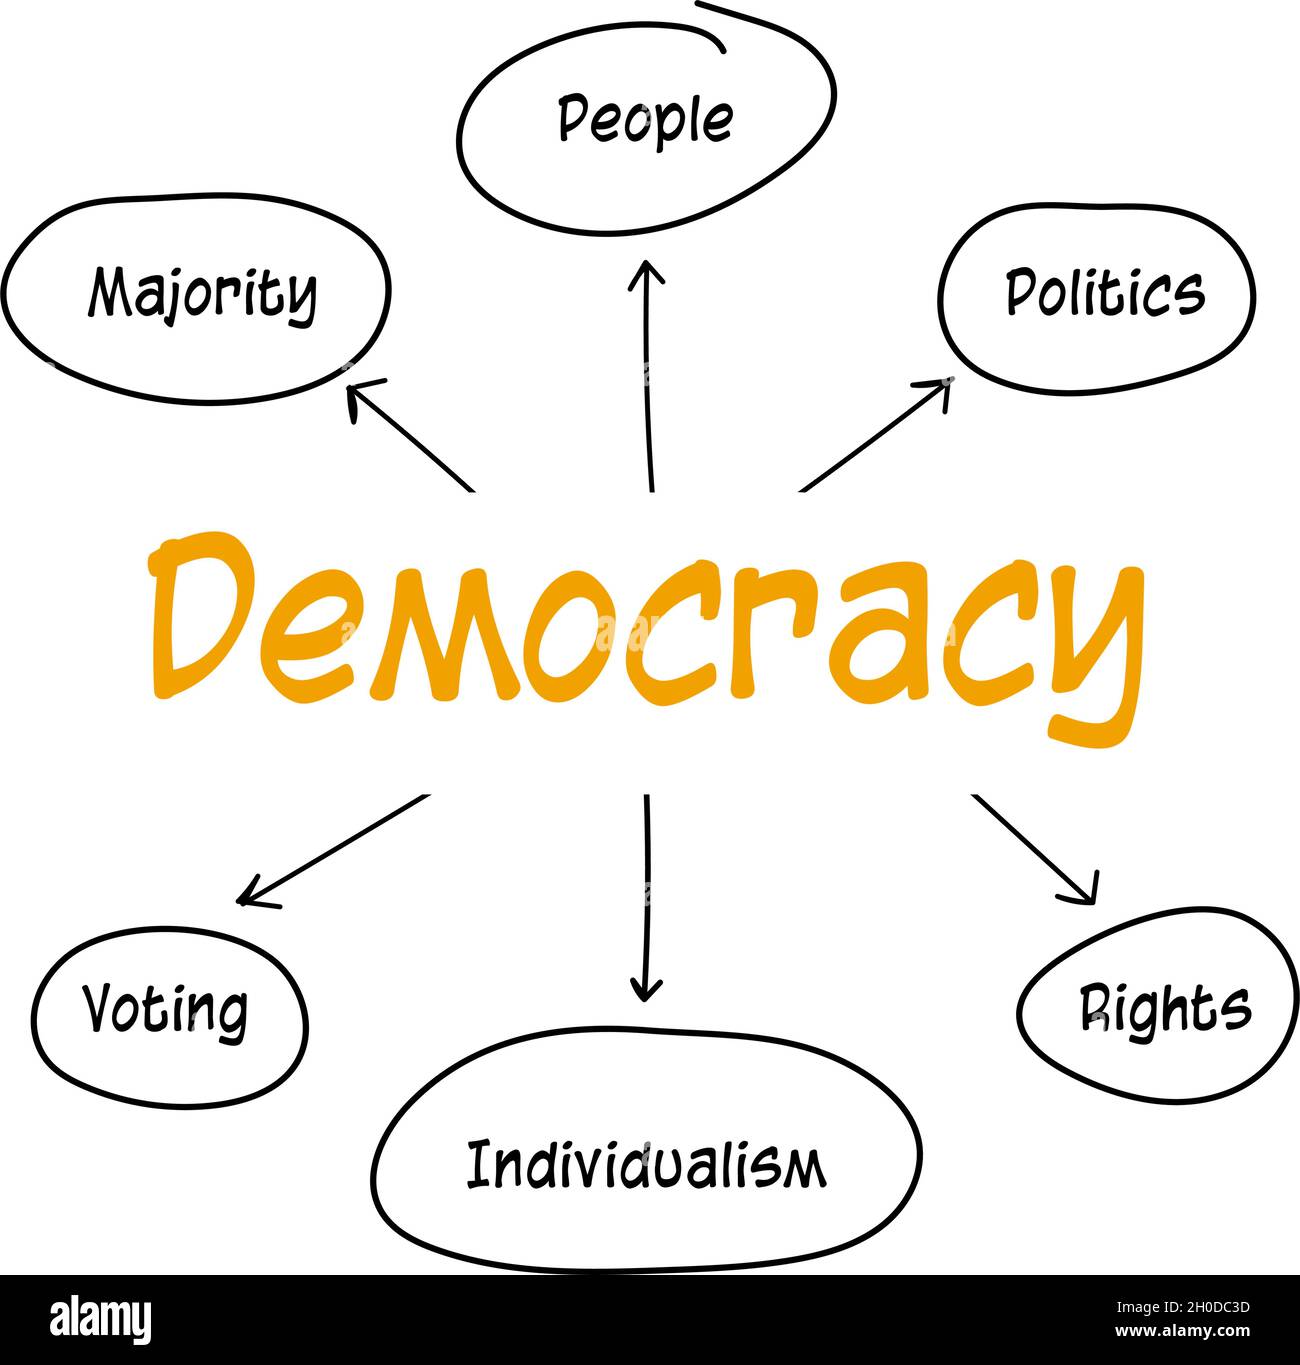 elements of democracy